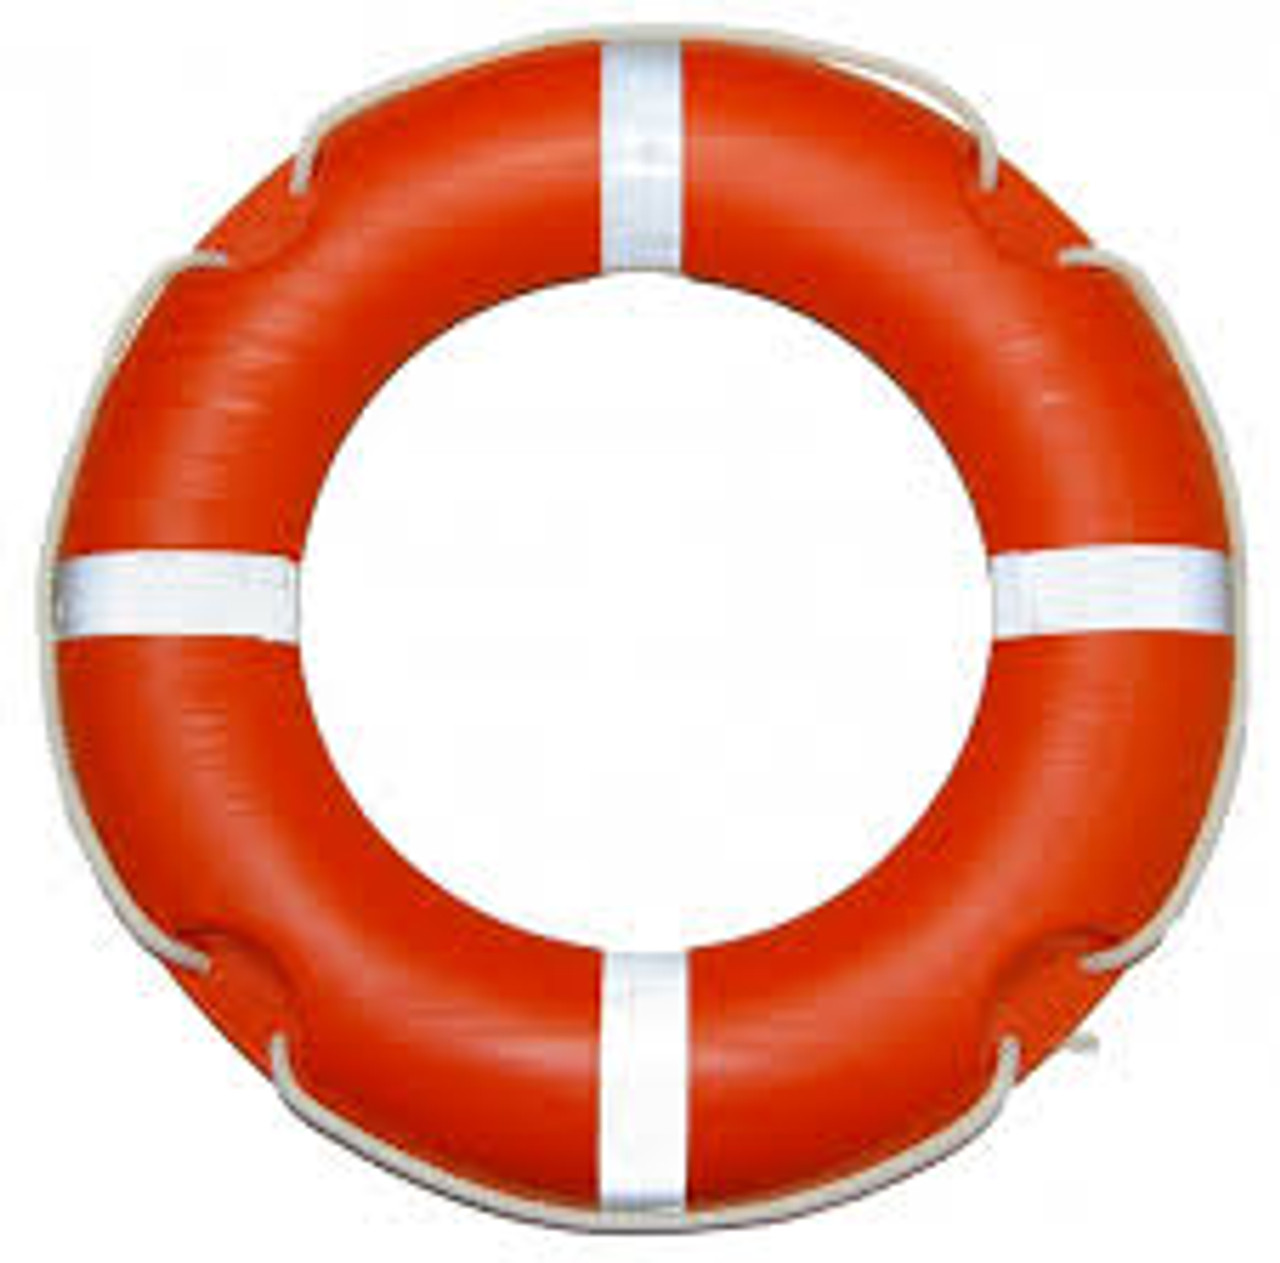 IMPA 330159 Lifebuoy 2,5 kg / MED approved